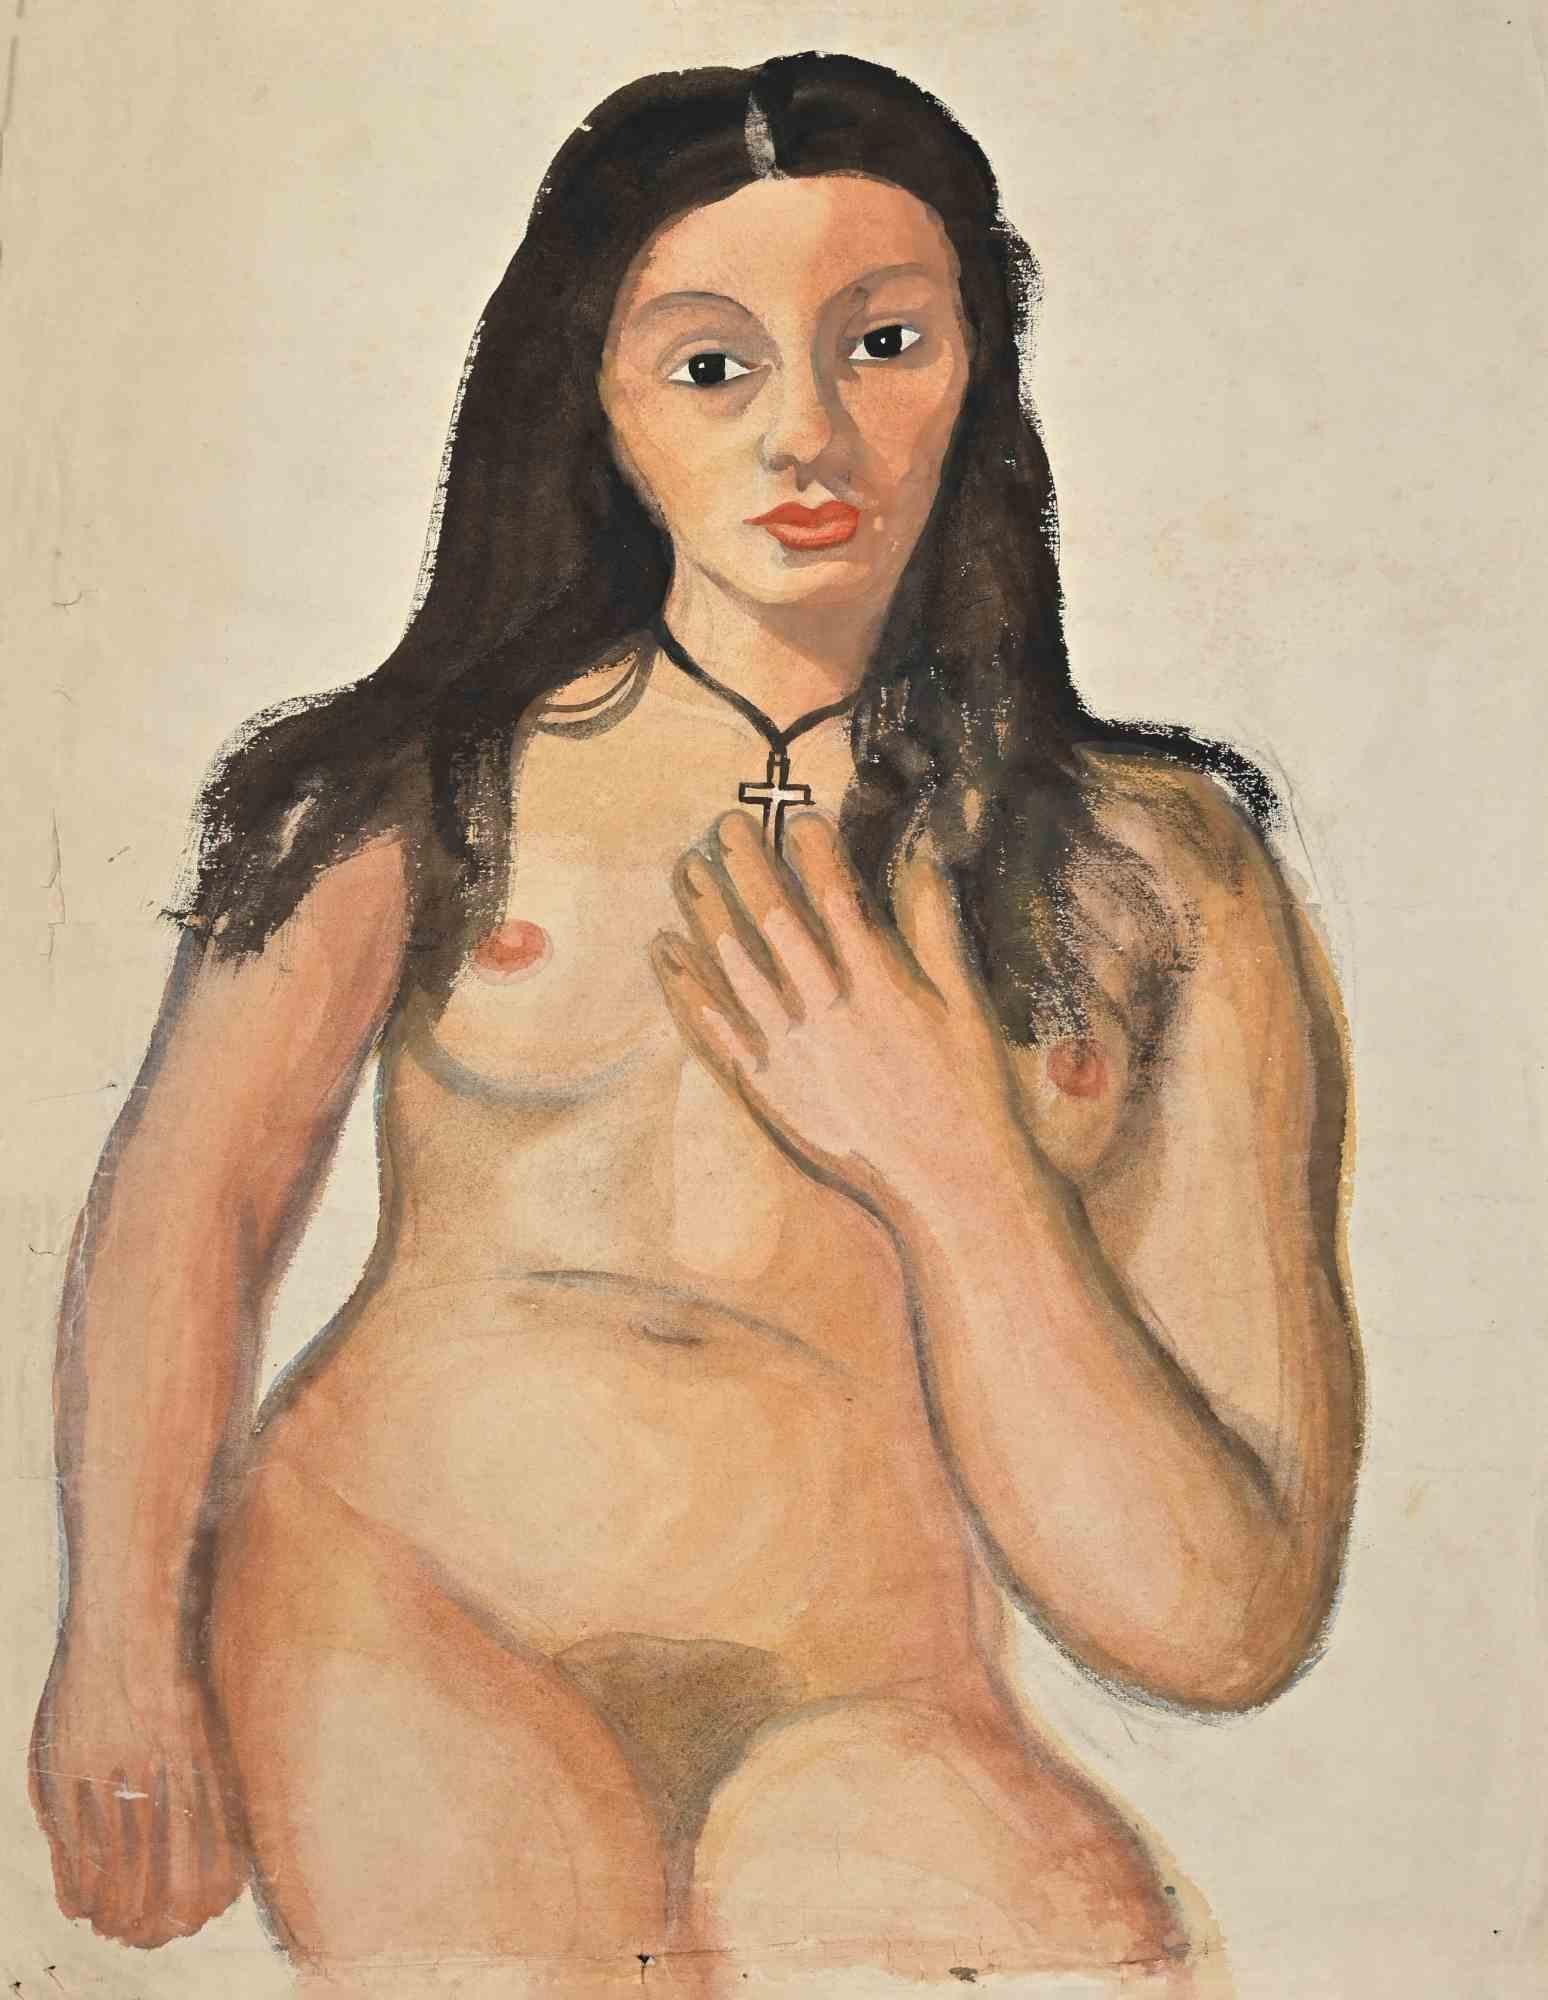 Nude ist eine Zeichnung in Aquarell und Tusche, die Mitte des 20. Jahrhunderts von Jean Delpech (1916-1988) angefertigt wurde. 

Guter Zustand bis auf Falten und Schnitte und fehlendes Stück Papier aufgrund der Zeit.

Das Kunstwerk ist in